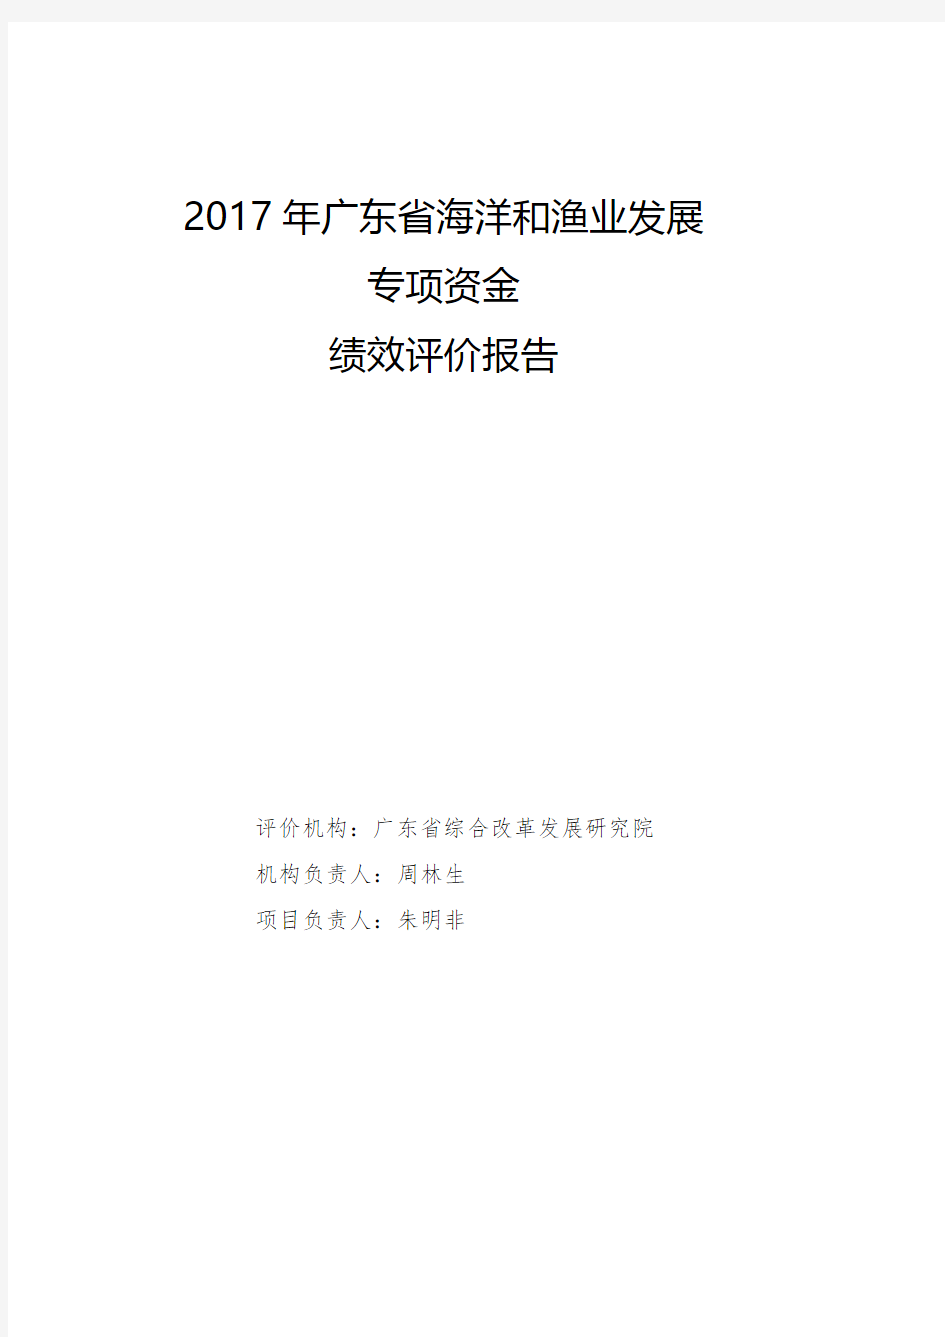 2017年广东省海洋和渔业发展专项资金绩效评价报告-gd